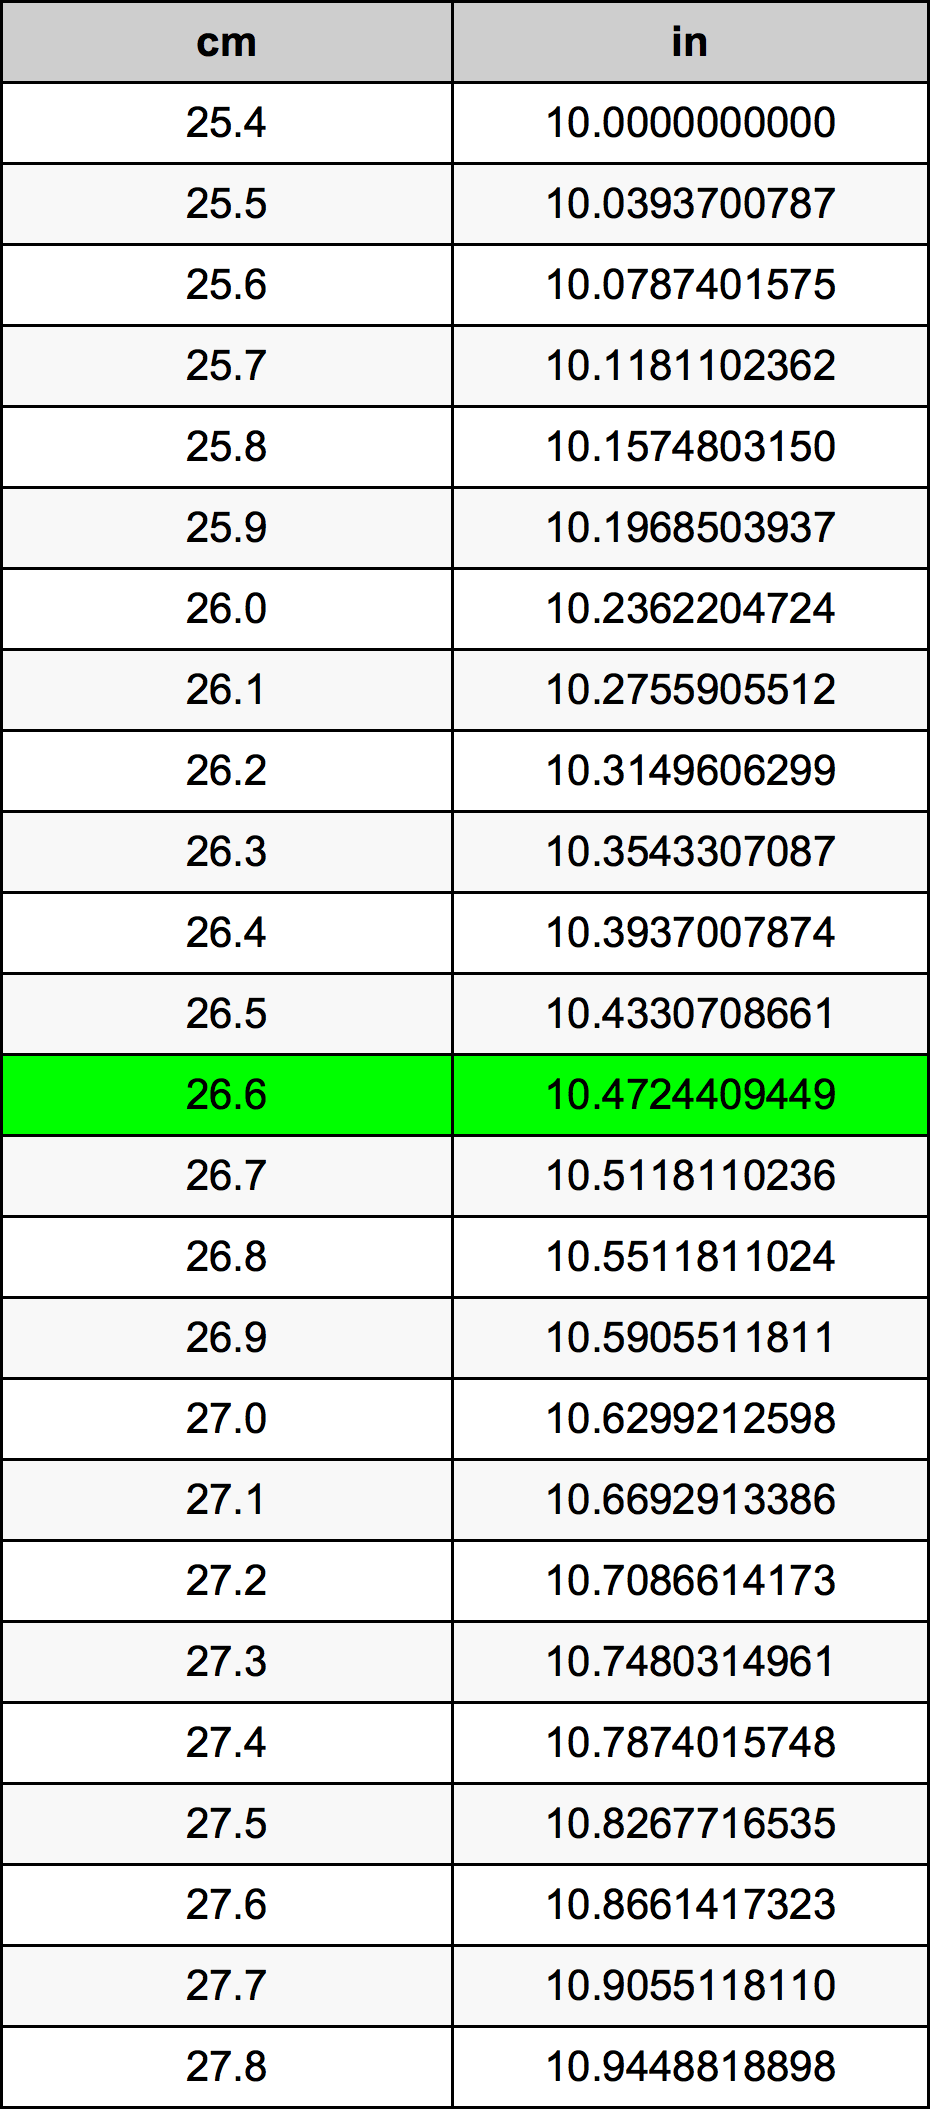 26.6 Centiméter átszámítási táblázat